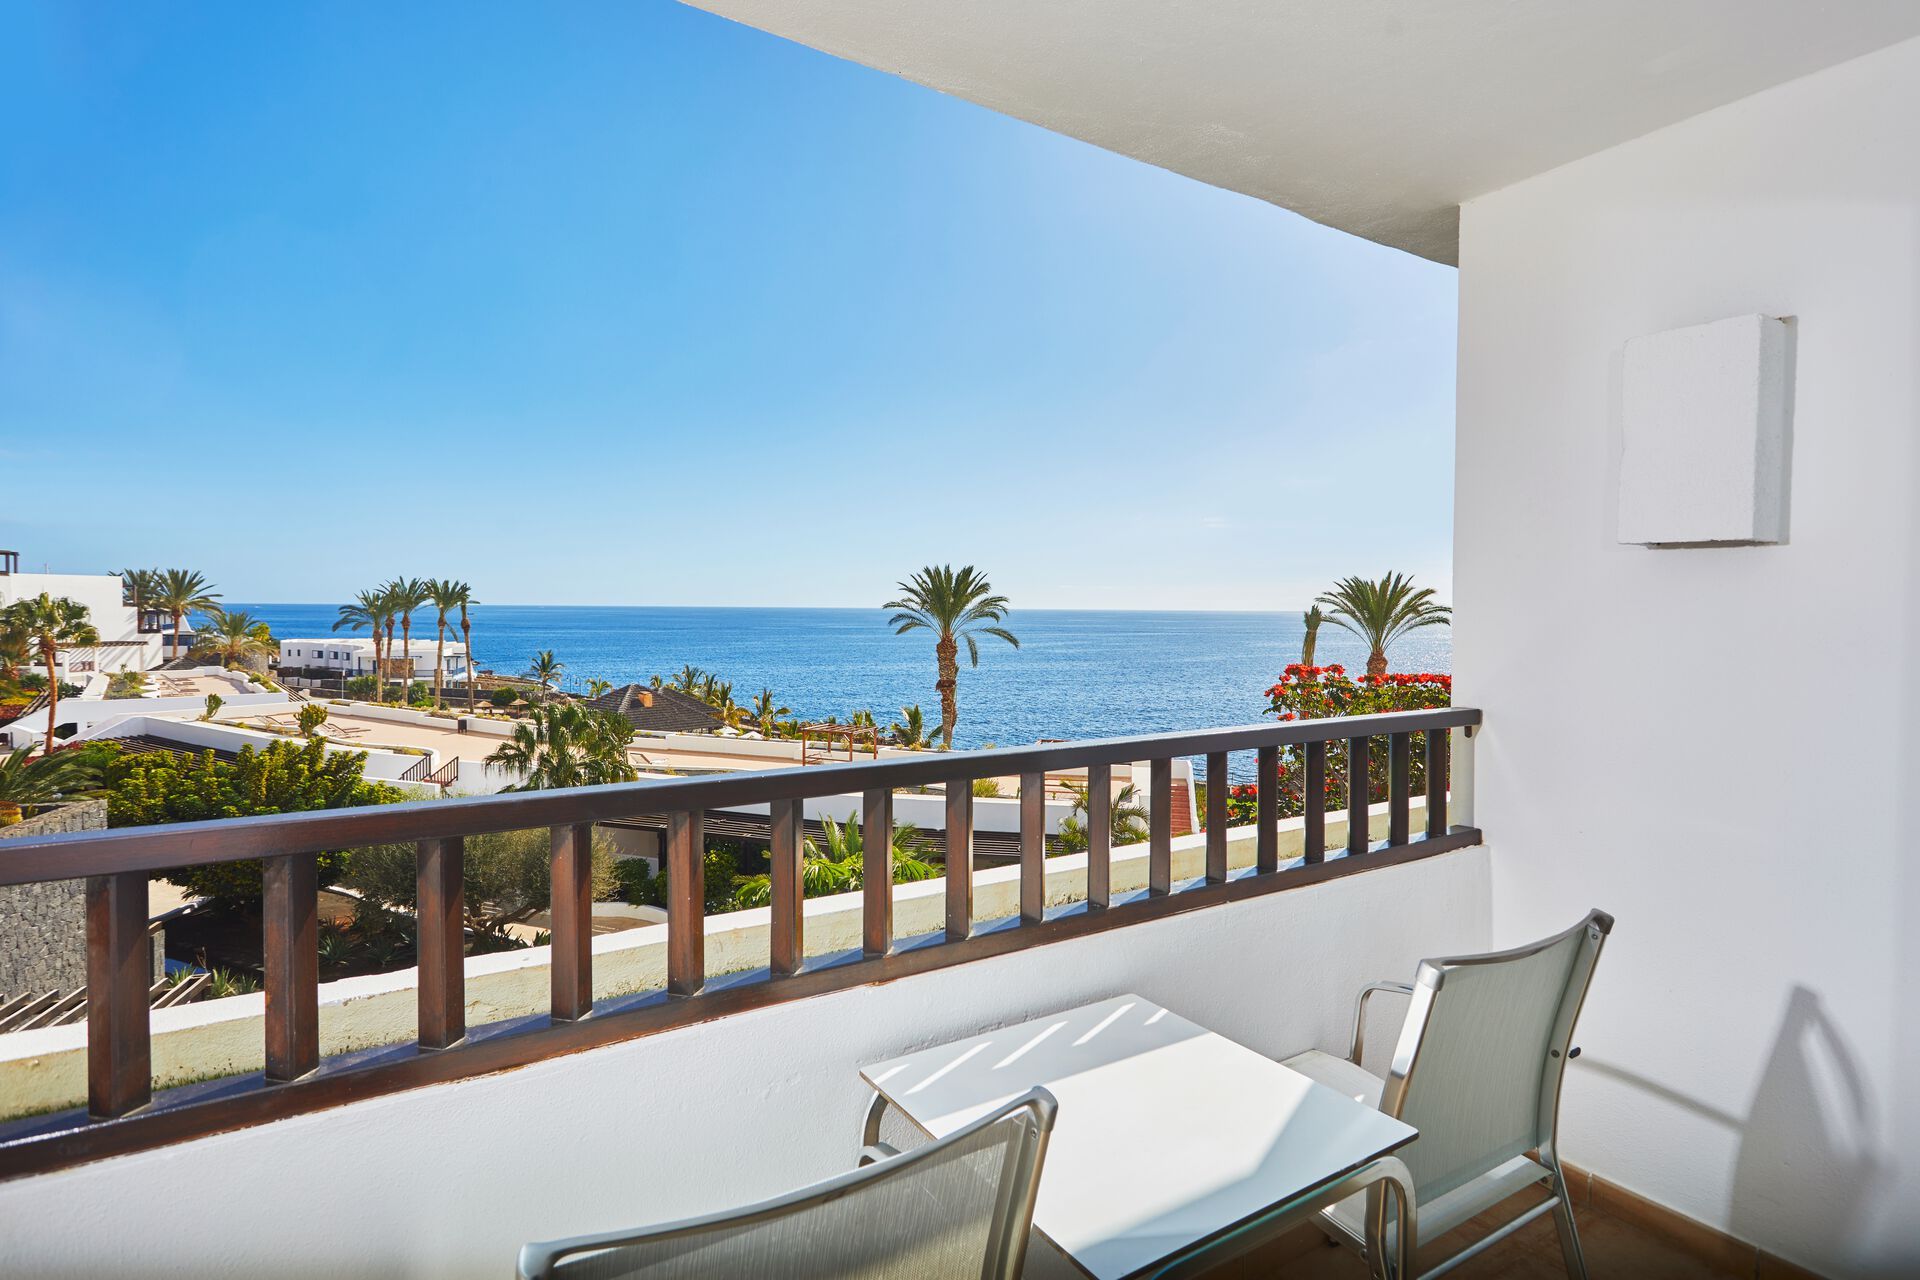 Canaries - Lanzarote - Espagne - Hotel Secrets Lanzarote Resort & Spa 5* - Adult Only